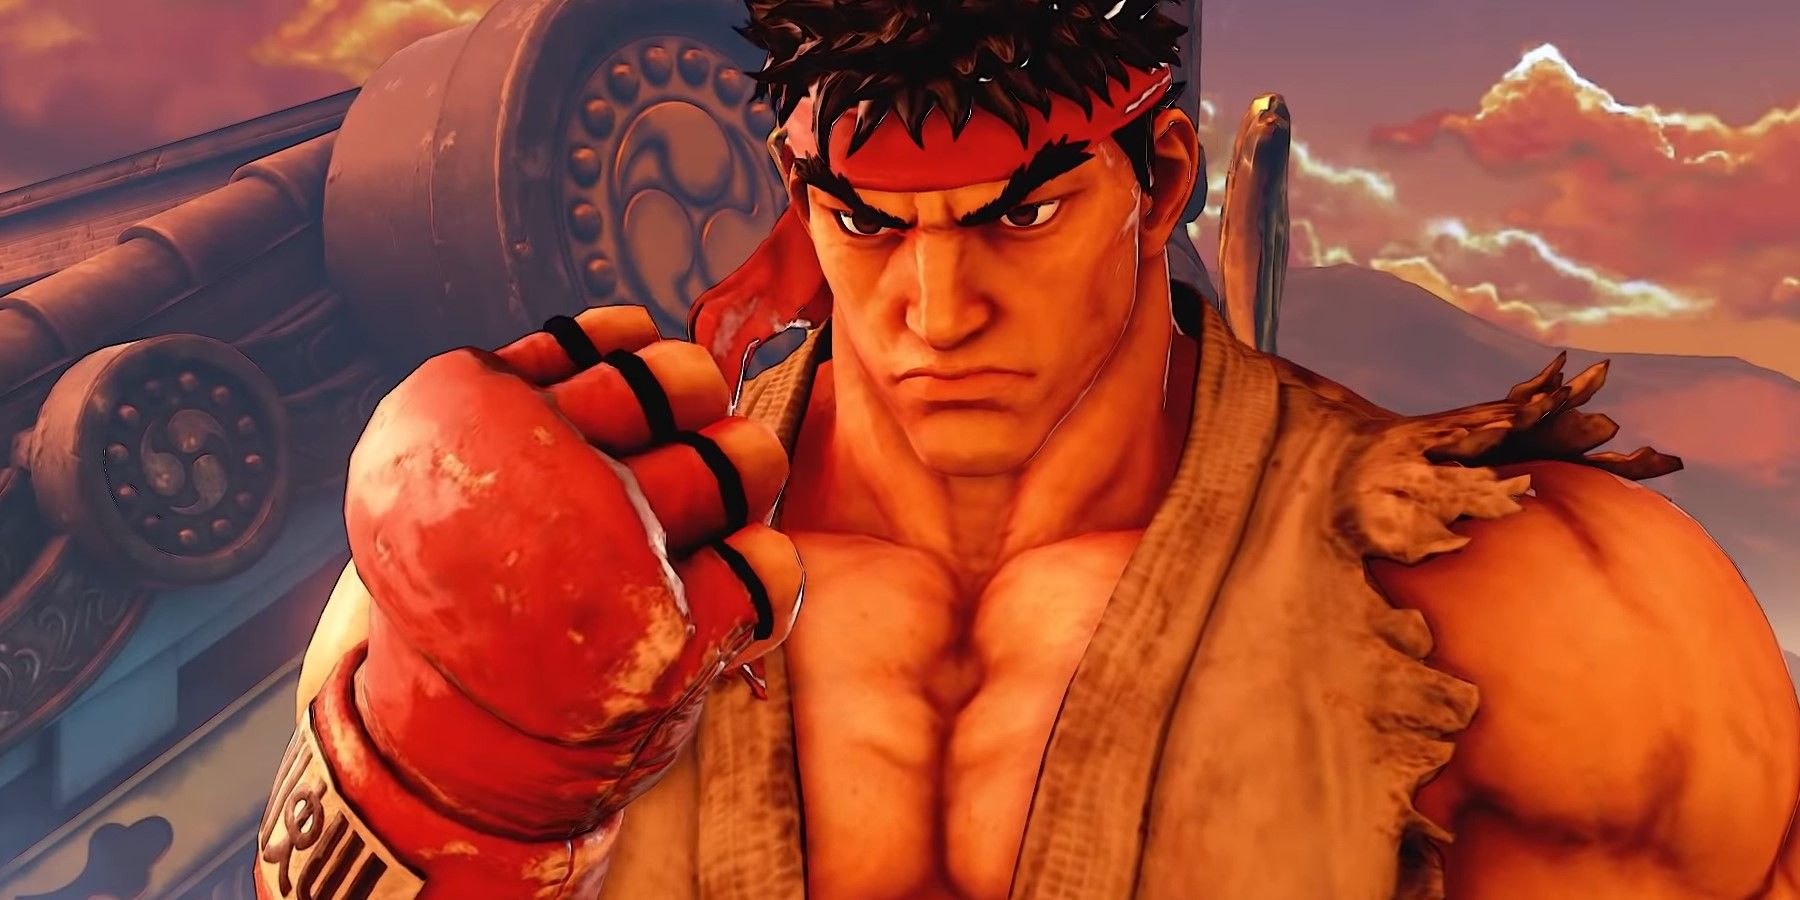 Ryu staring at his fist